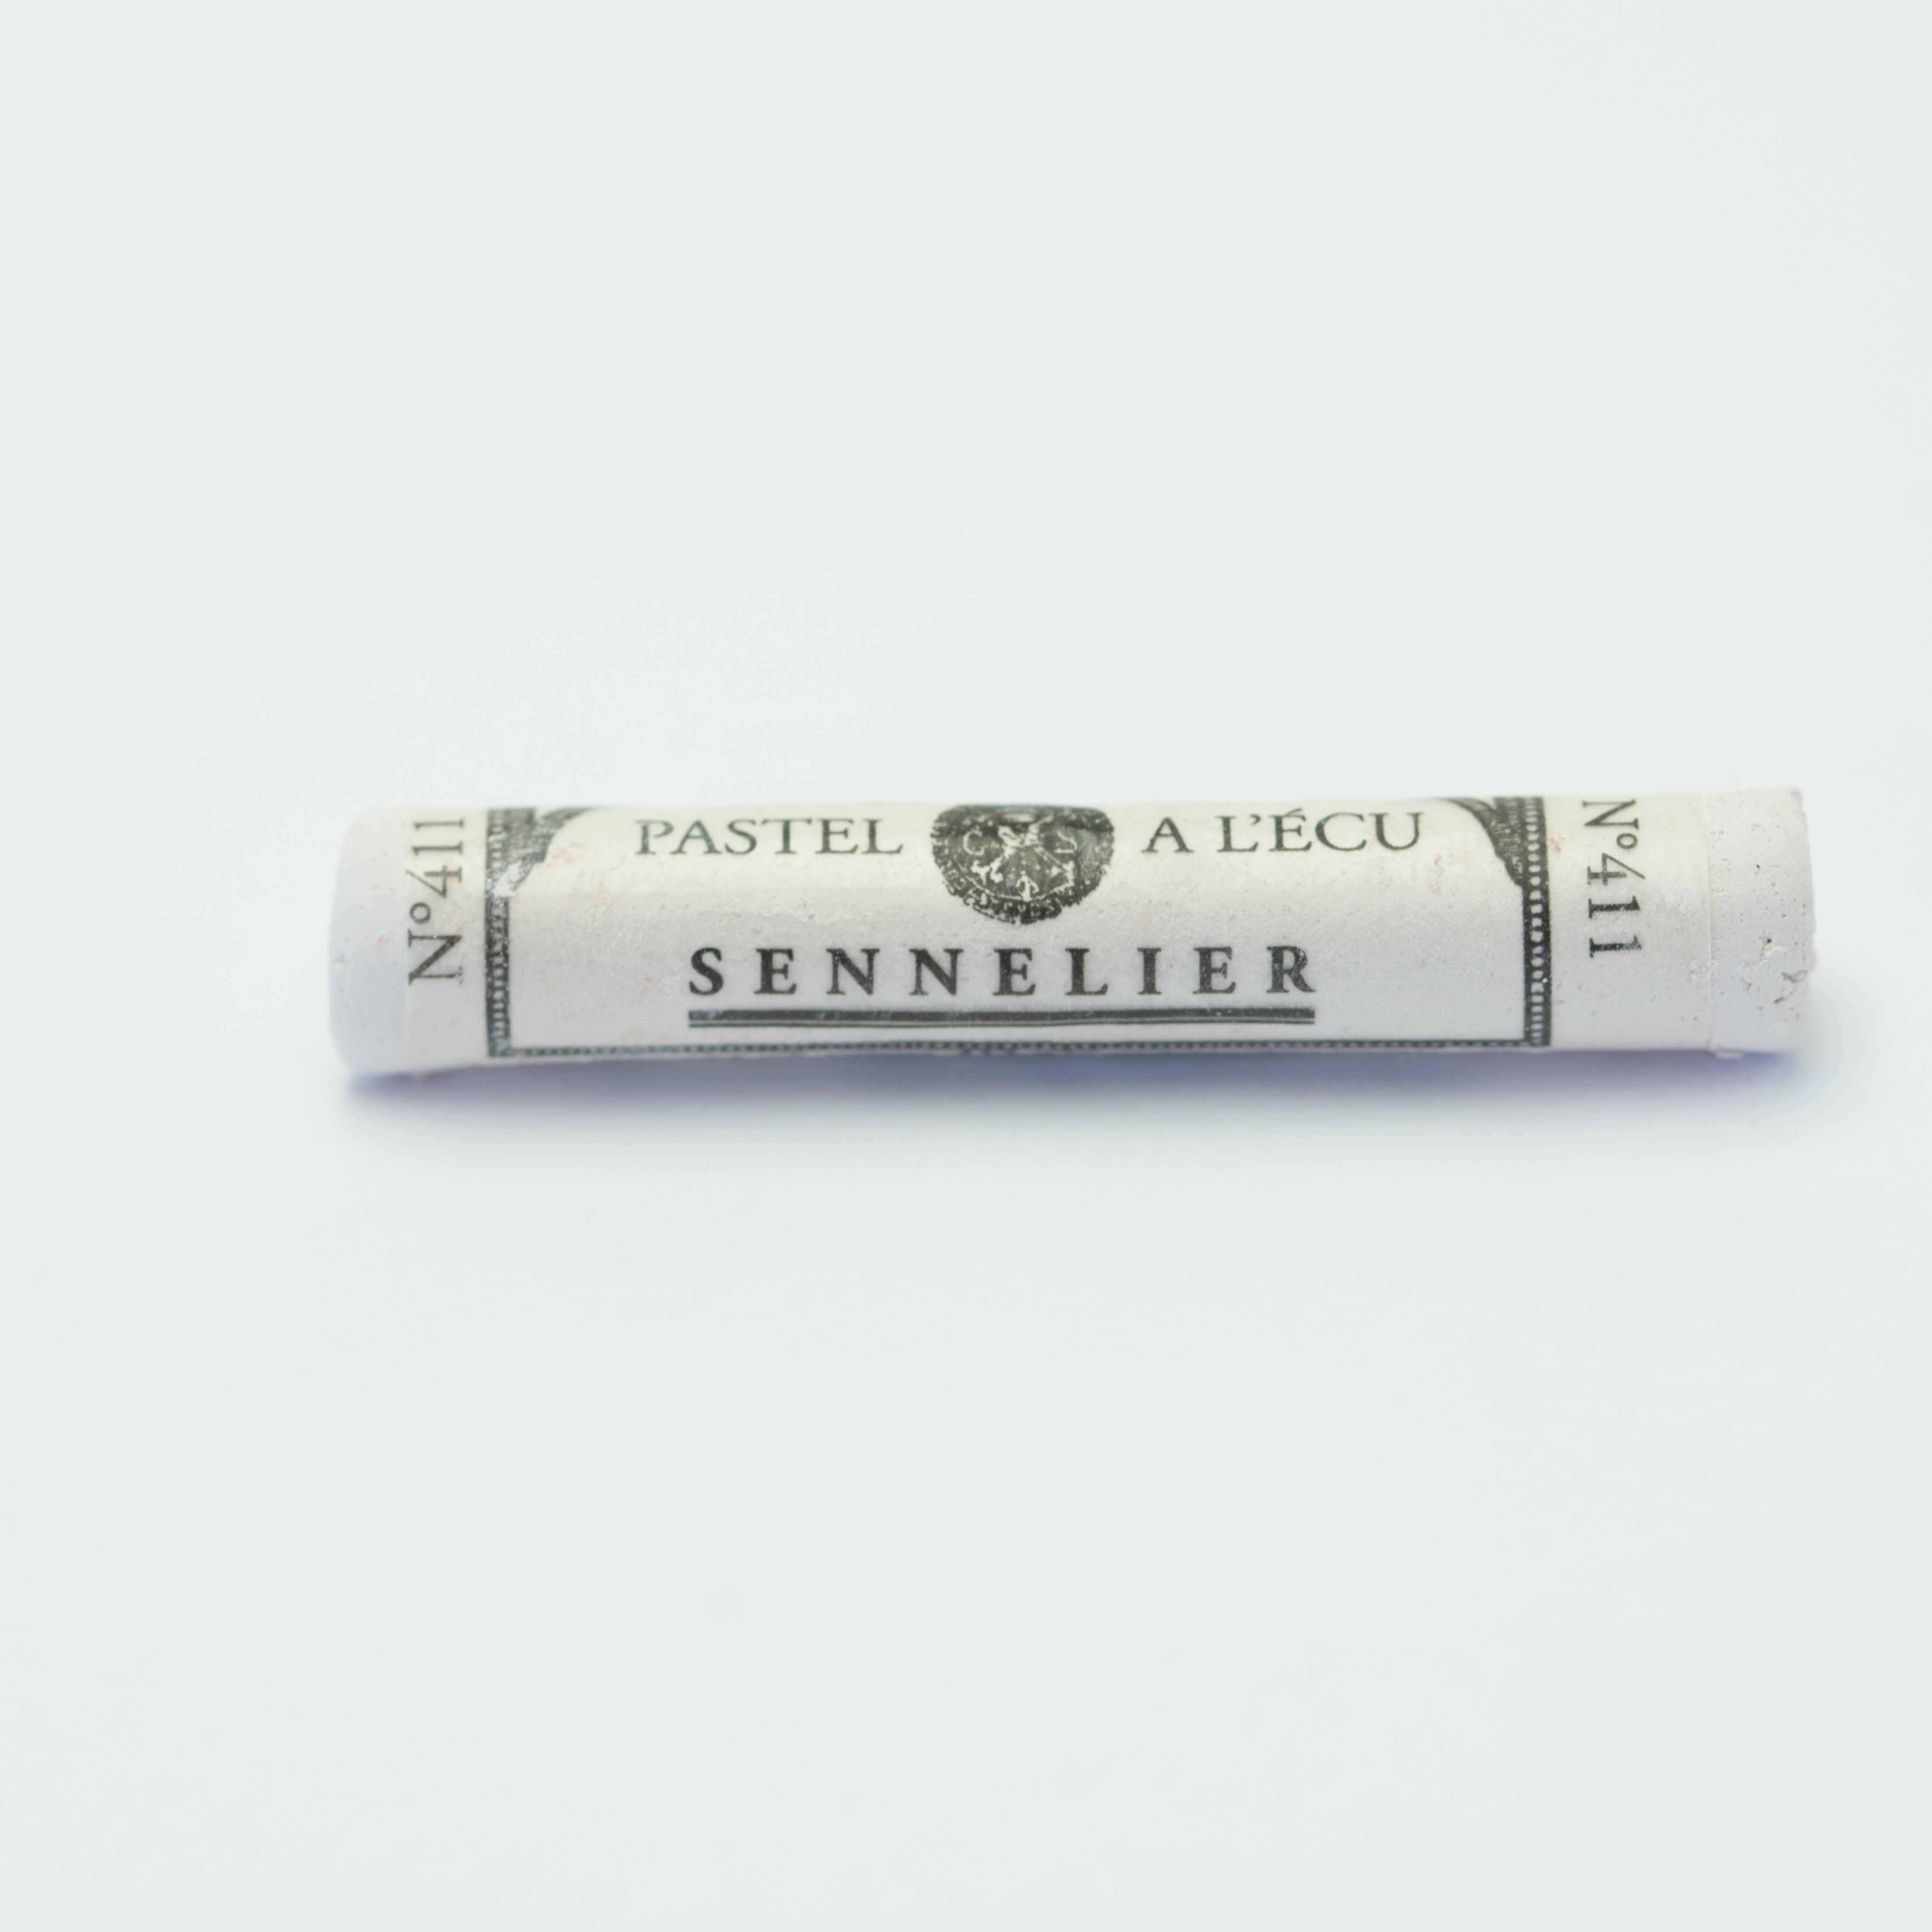 Sennelier Extra Soft Pastels - Van Dick Violet 411